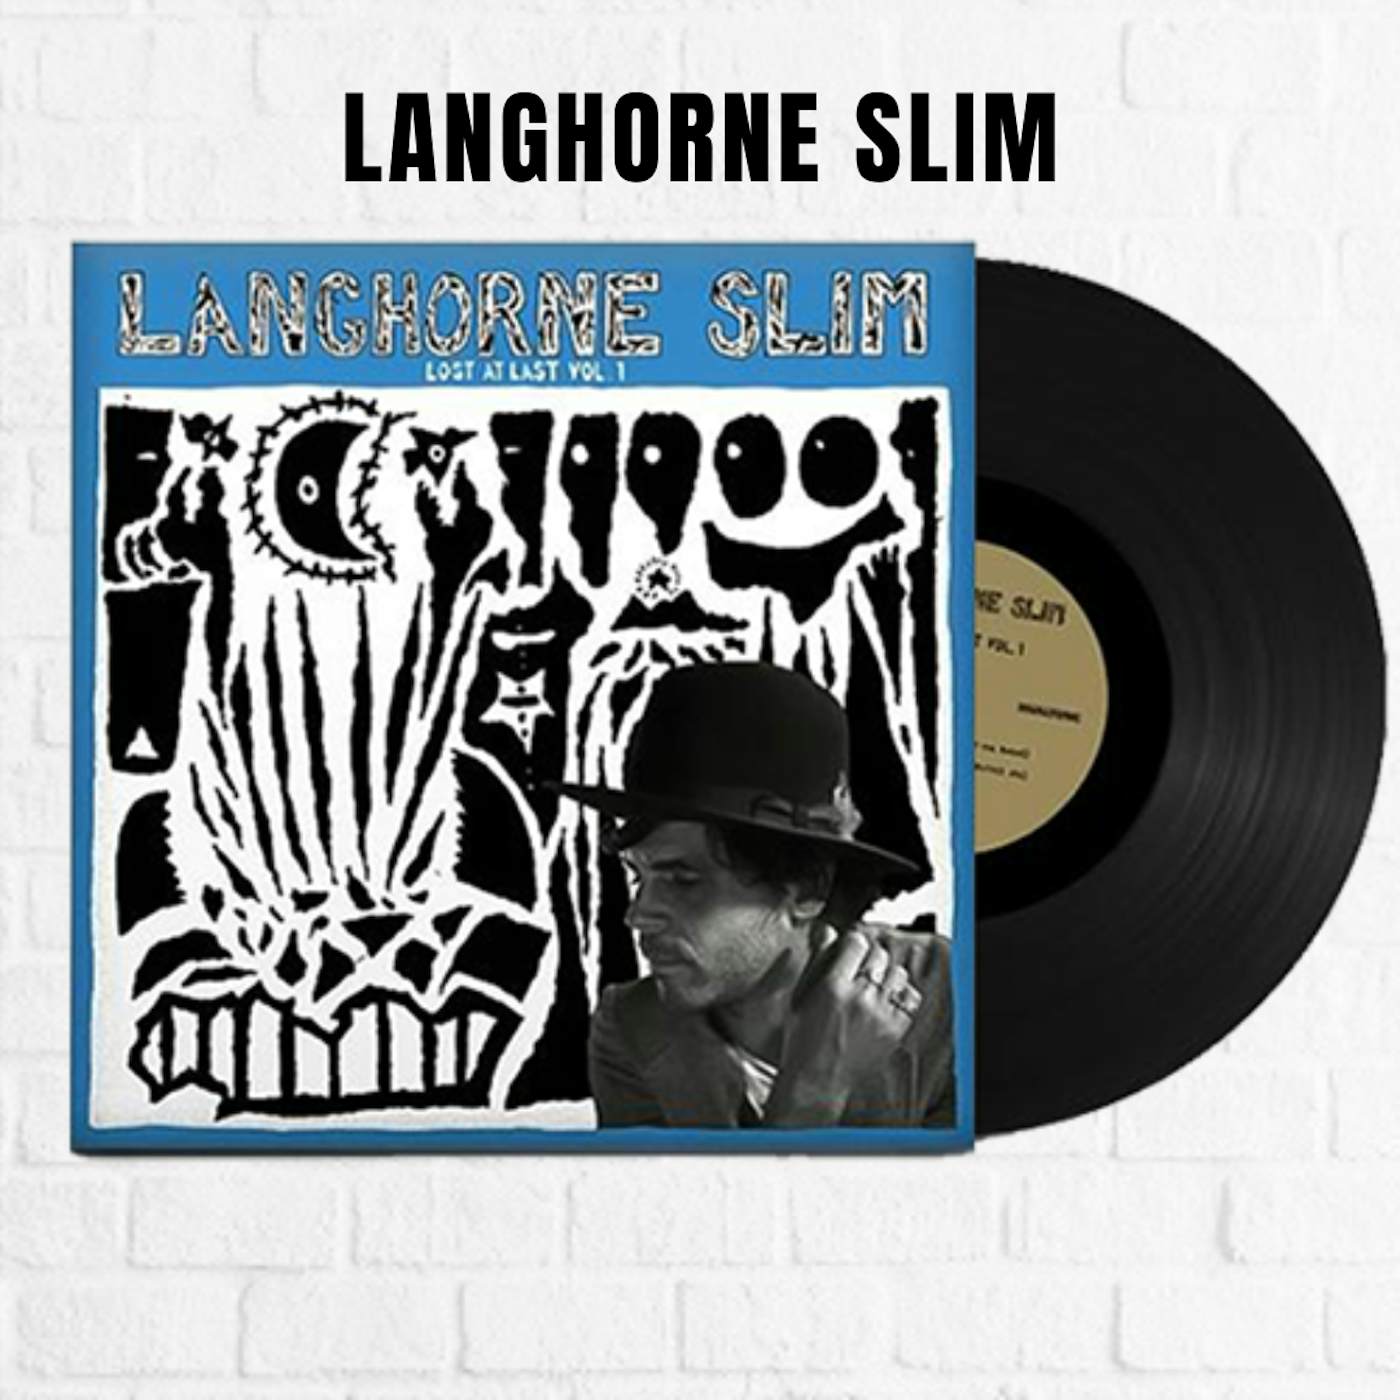 Langhorne Slim Lost at Last Vol. 1